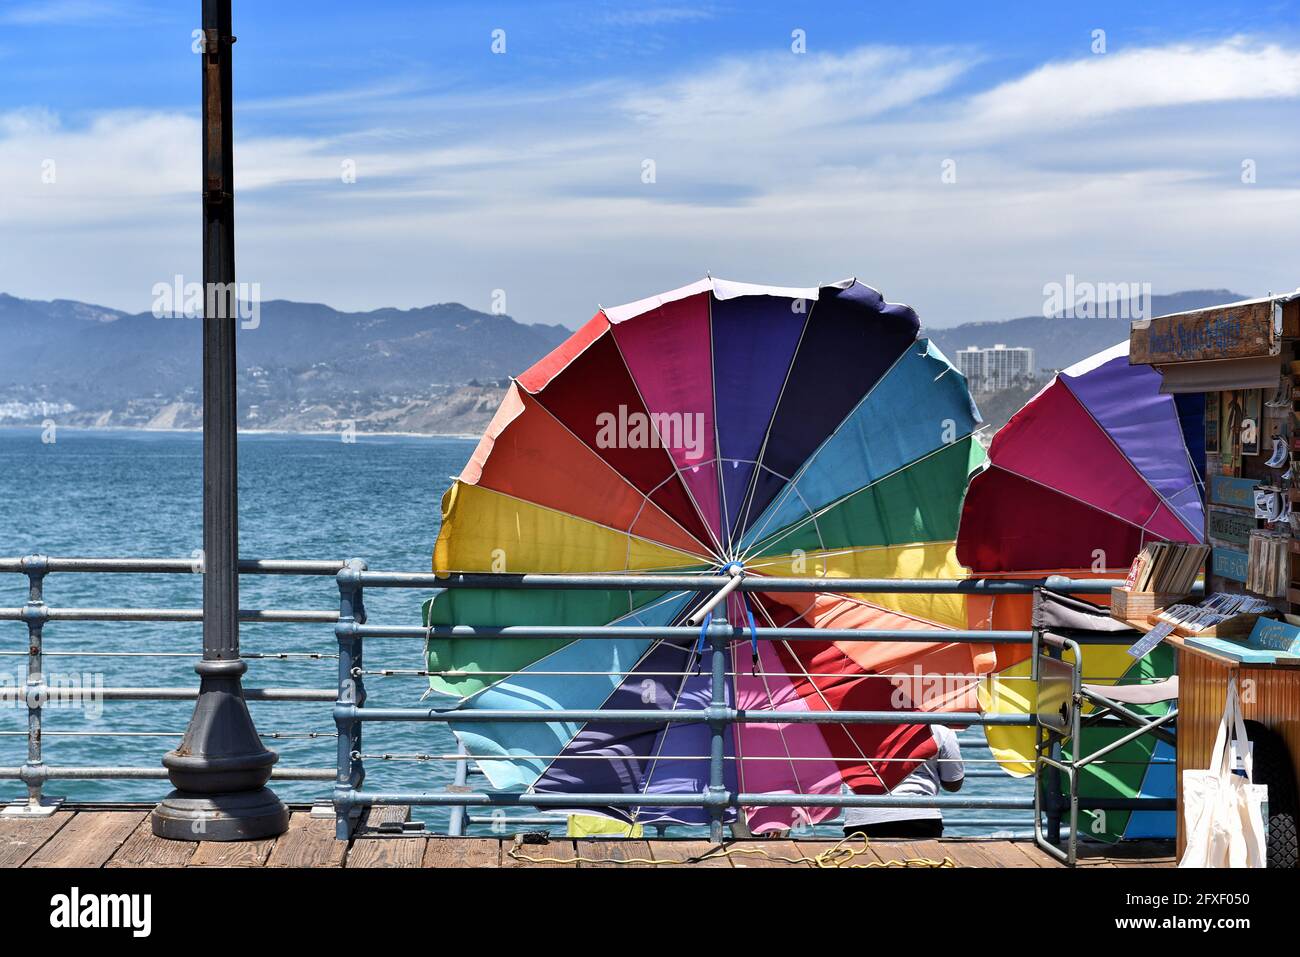 SANTA MONICA, KALIFORNIEN - 25. MAI 2021: Bunte Regenschirme am Pier mit den Santa Monica Mountains und der Bucht im Hintergrund. Stockfoto